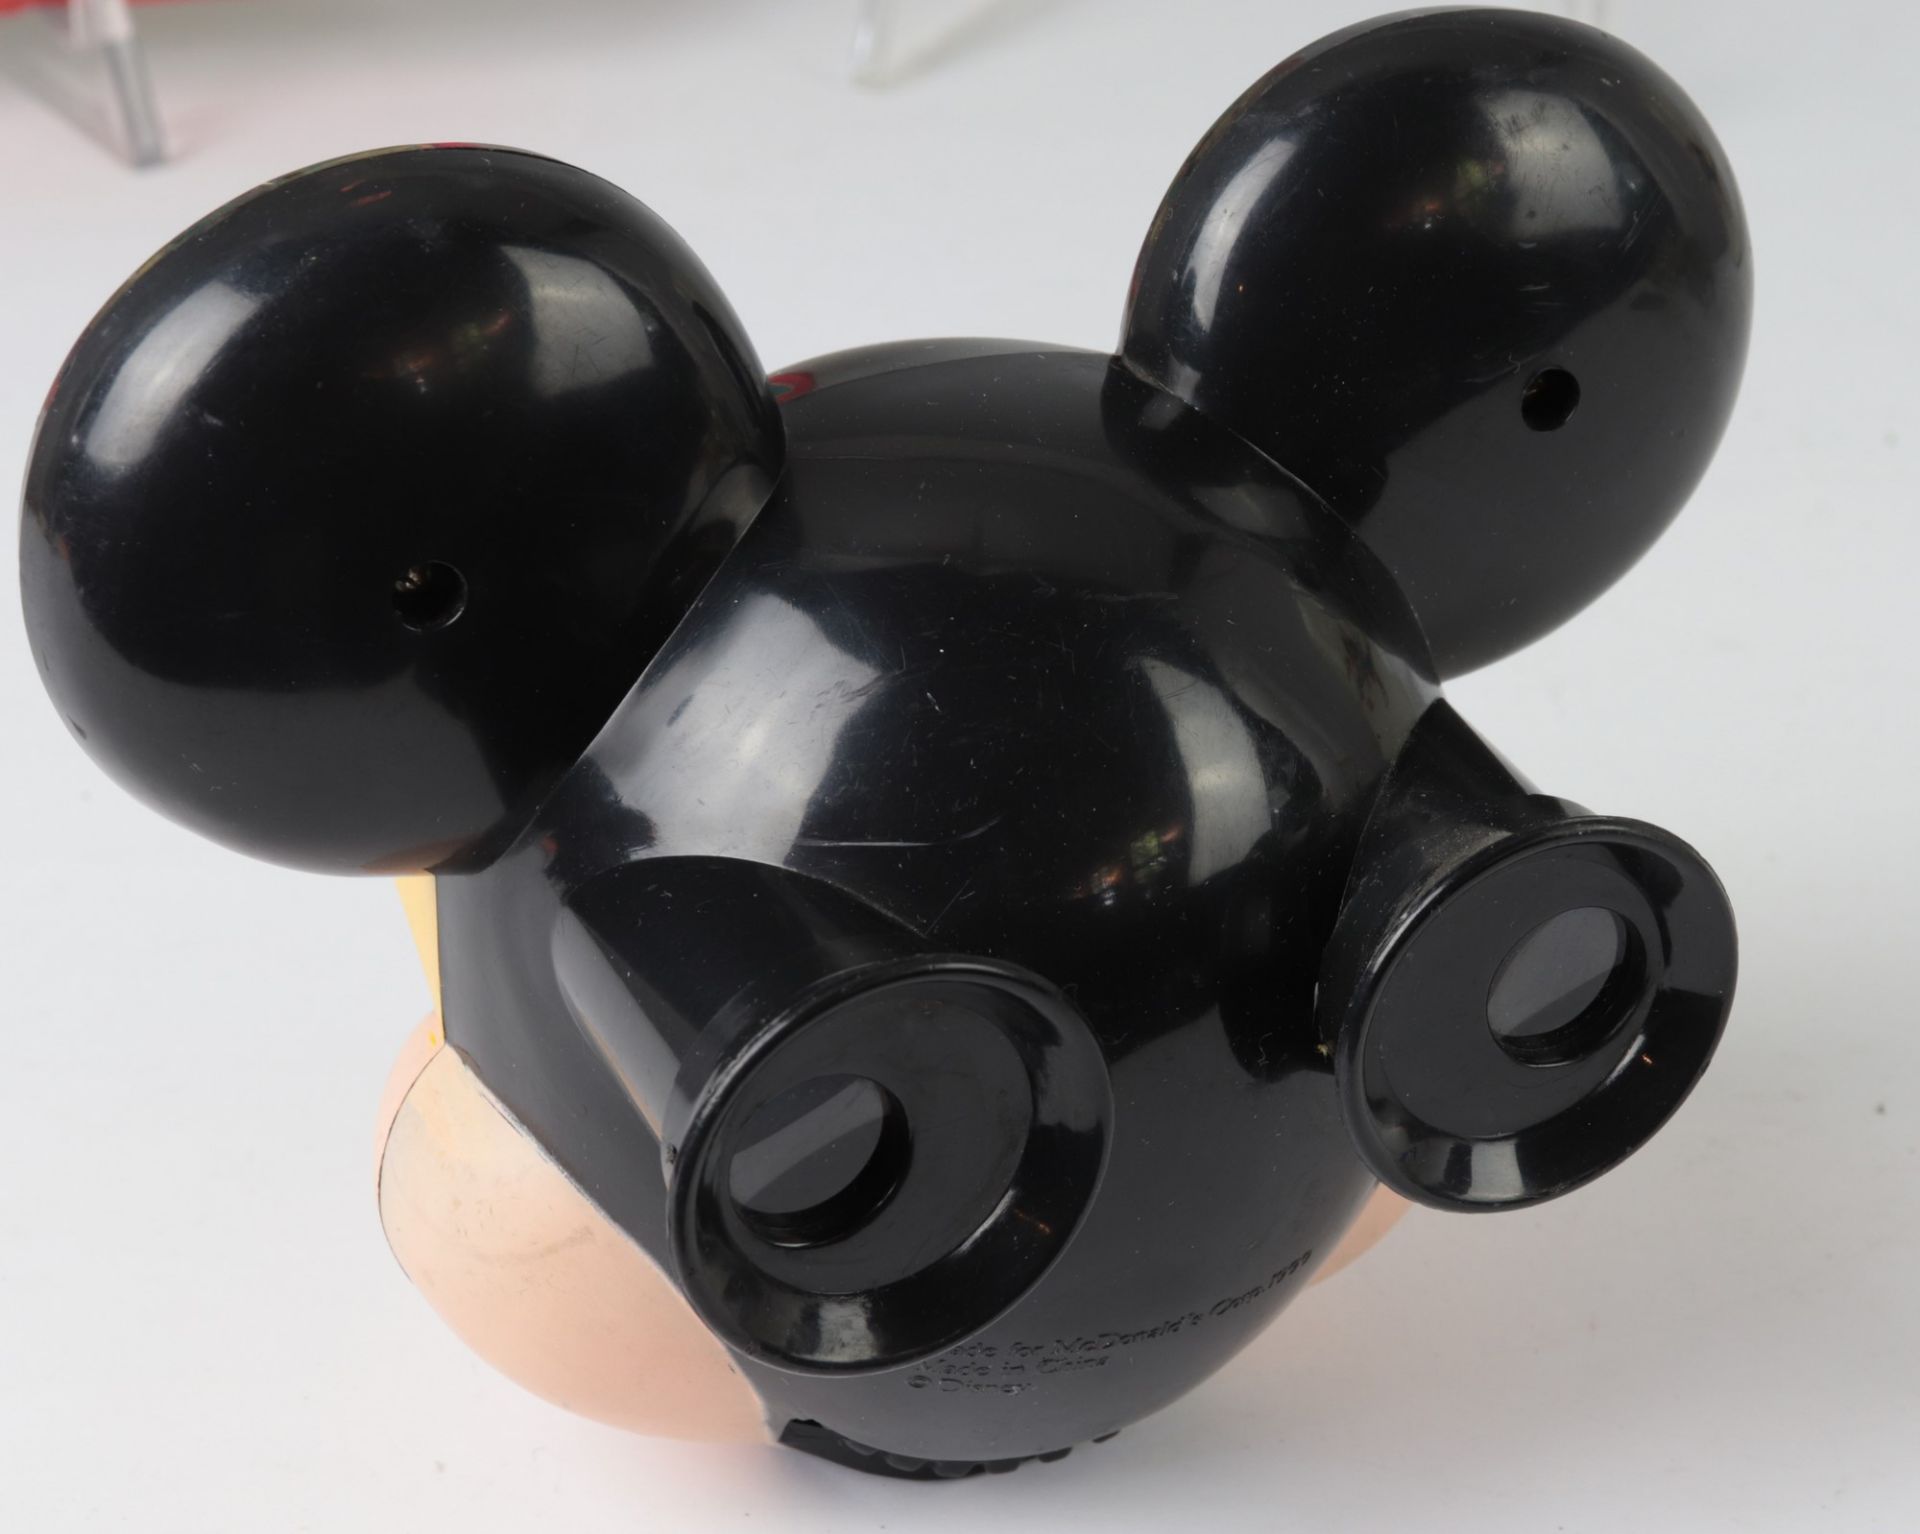 Mickey Mouse - Sammlung 20. Jh., 16 Teile, vielfältige Sammlung aus versch. Materialien u. - Image 7 of 9